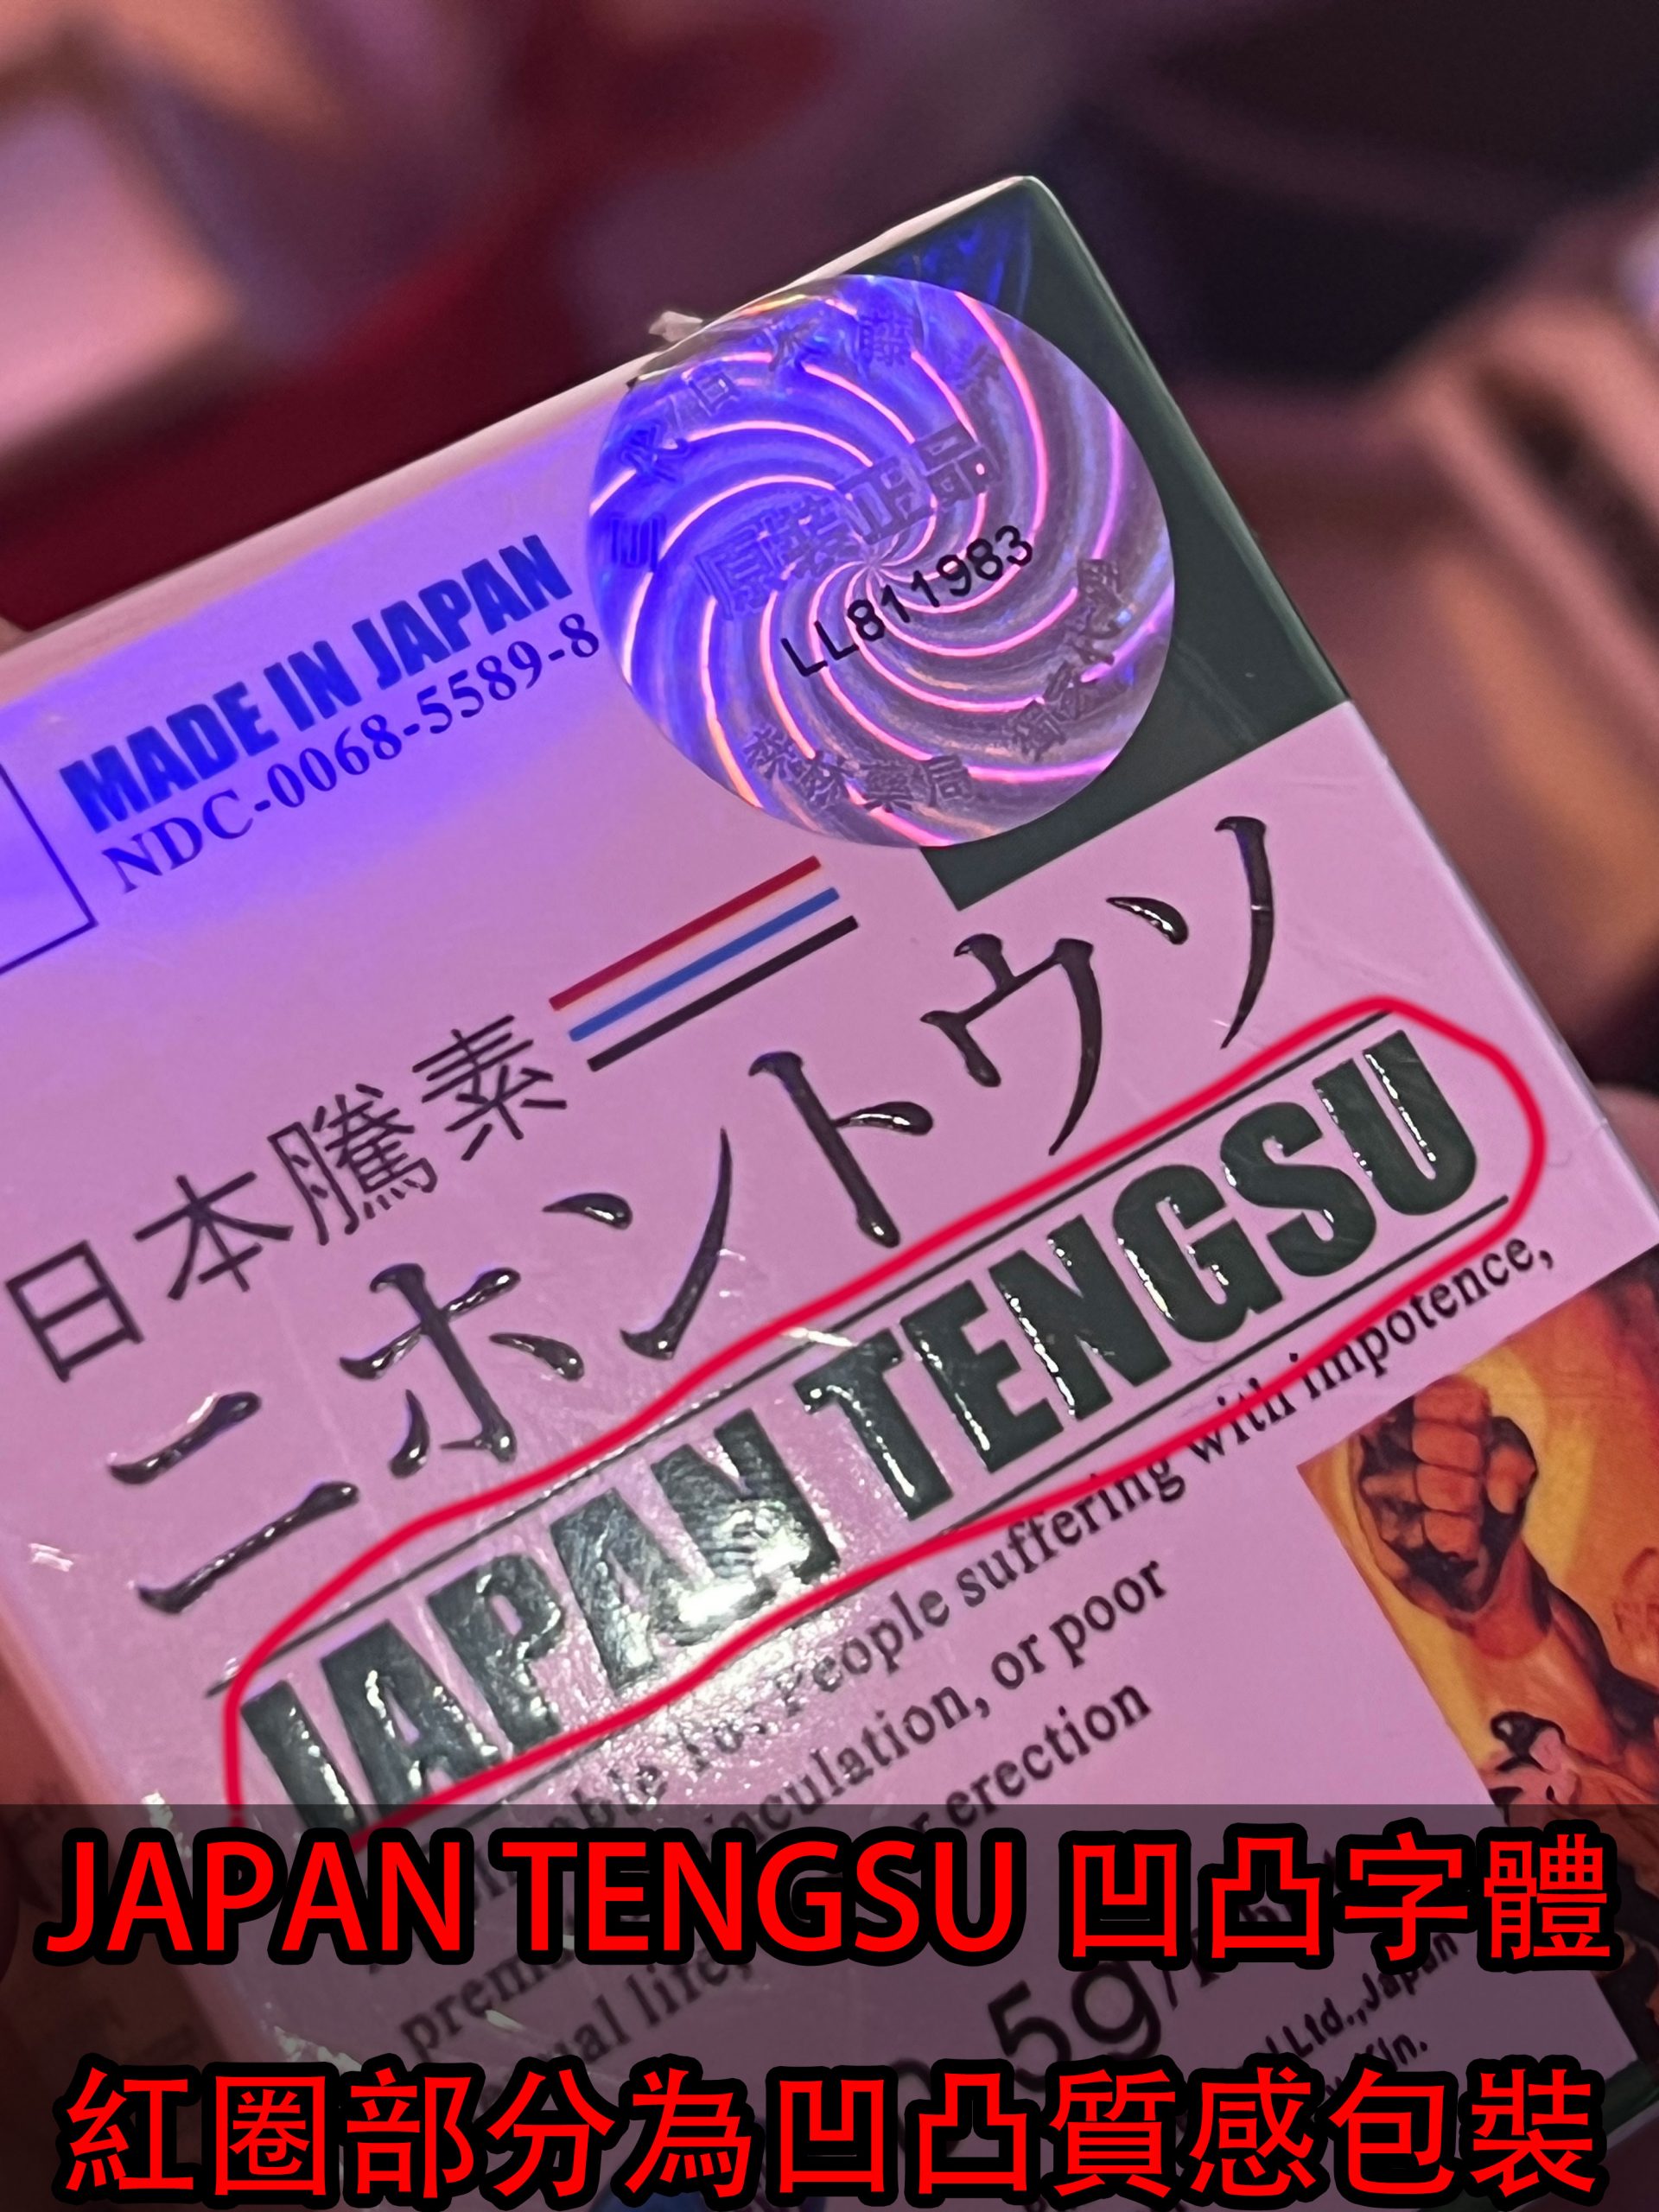 JAPAN-TENGSU 凹凸字體包裝